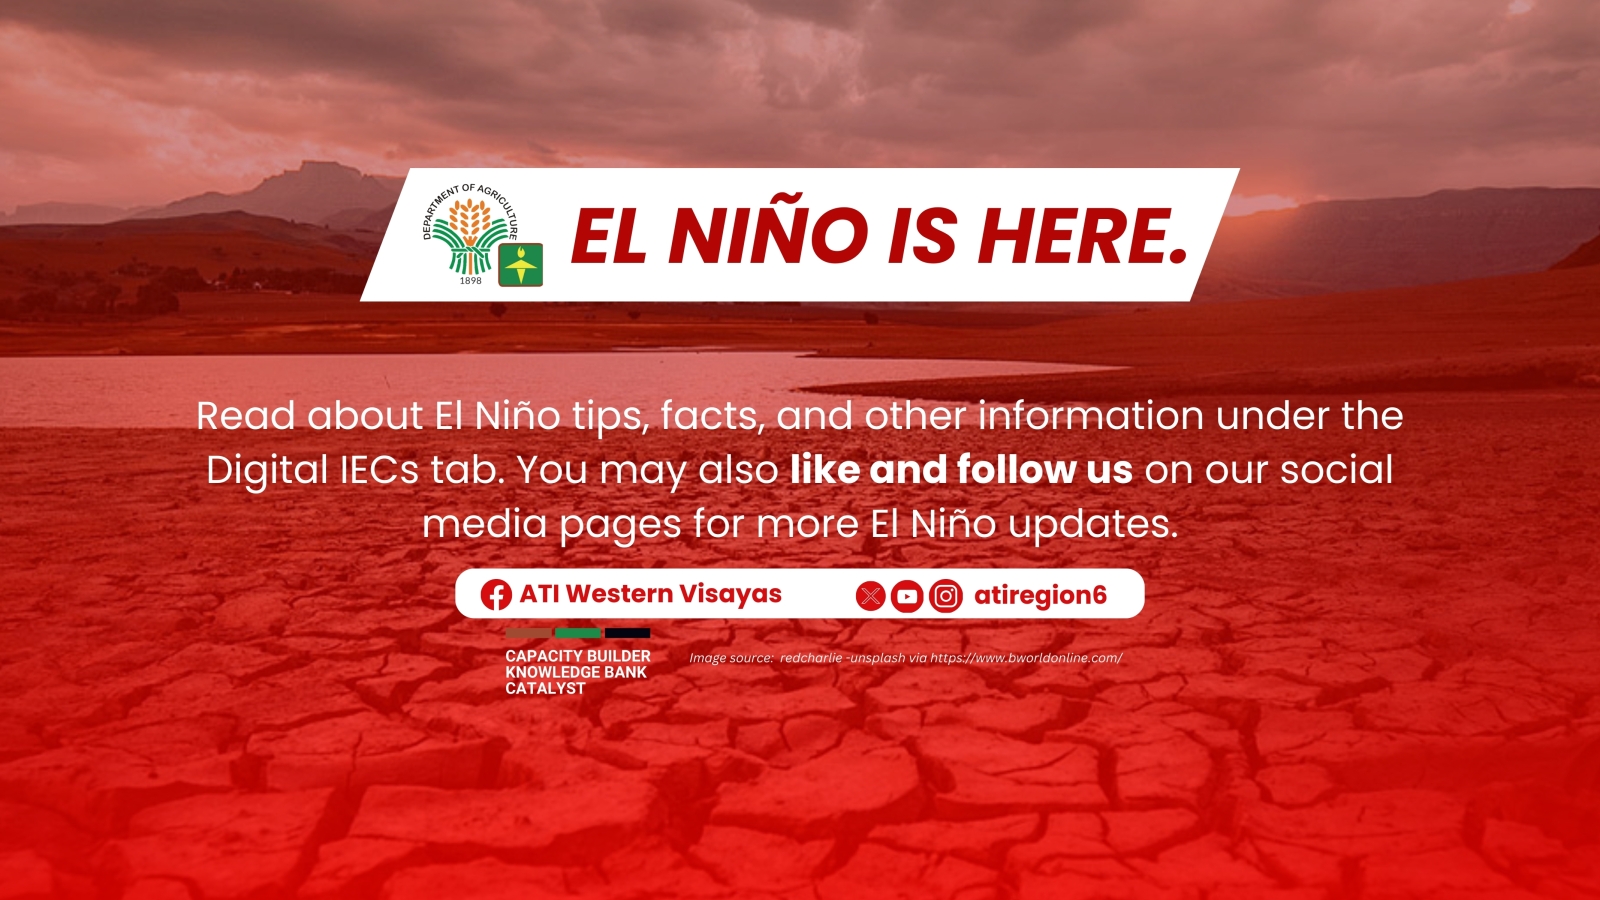 El Nino is here